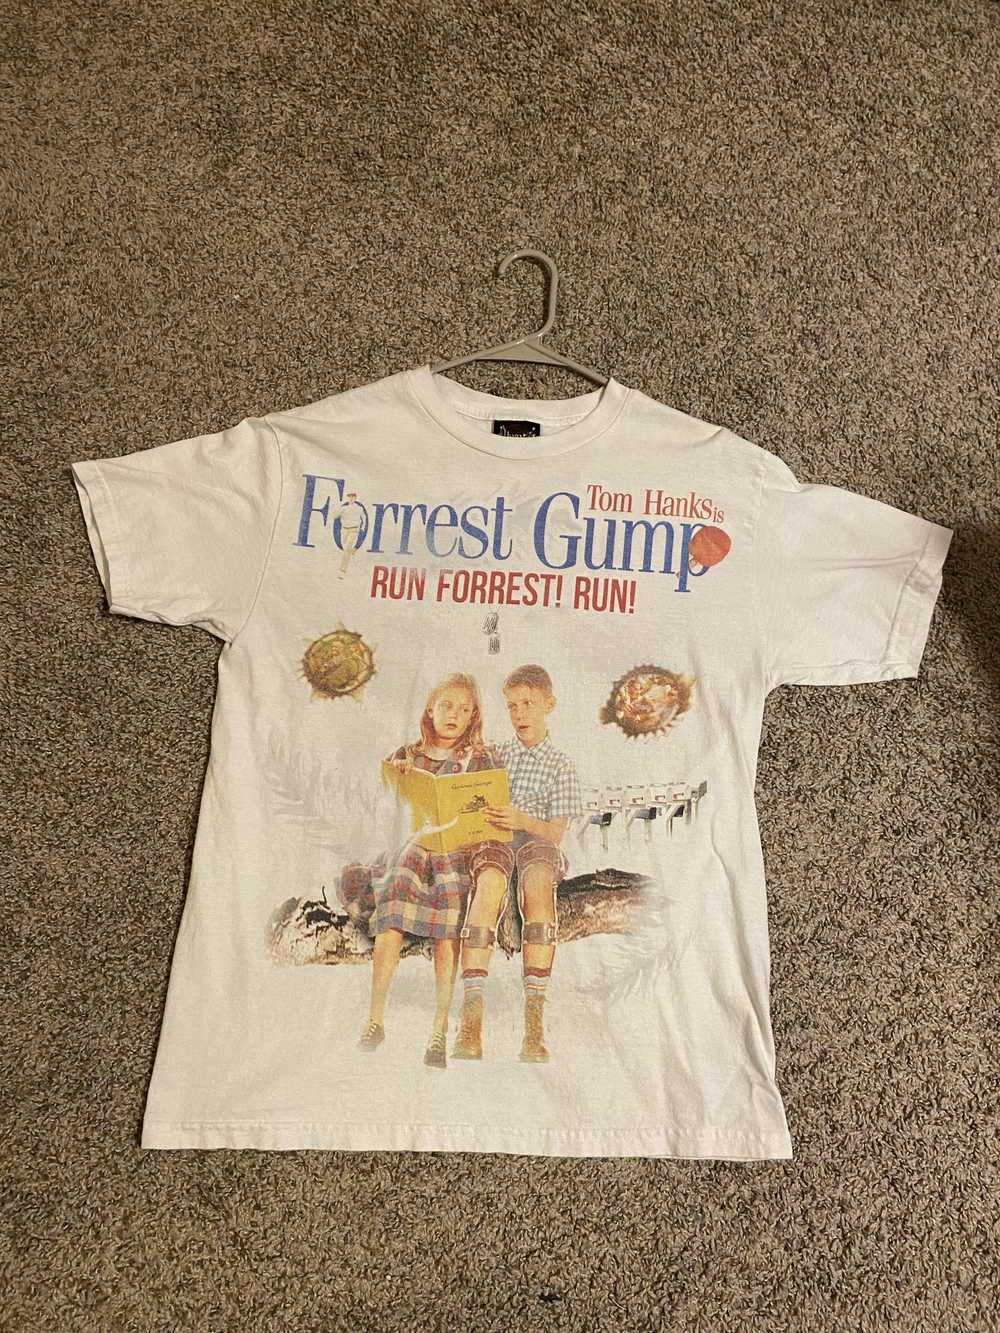 Vintage Dbruze Forrest Gump shirt - image 1